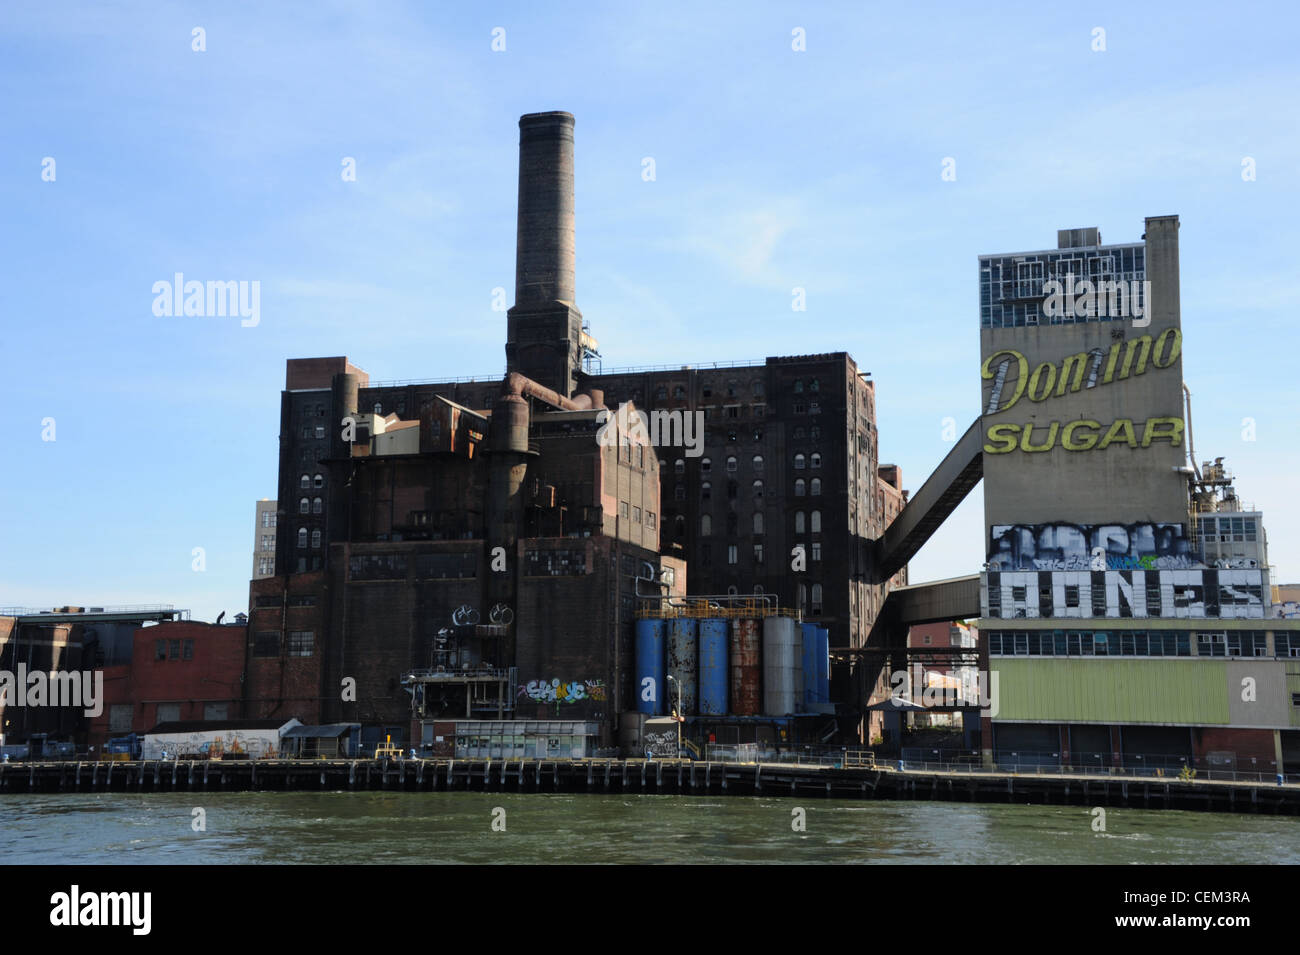 Cielo blu vista dall'East River, abbandonata Domino raffineria di zucchero di edificio e segno, Brooklyn Waterfront, Williamsburg, New York Foto Stock